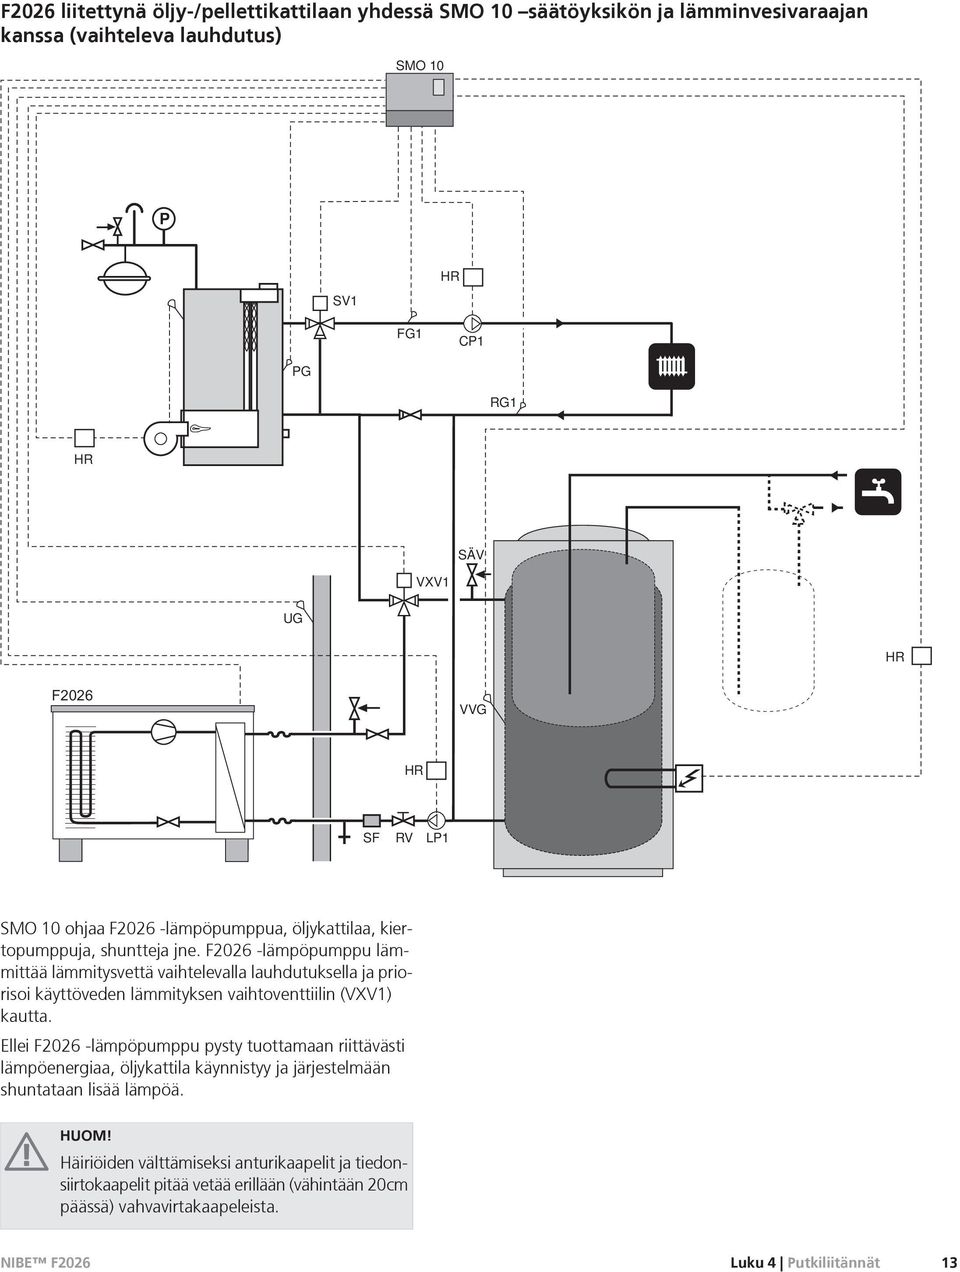 F2026 -lämpöpumppu lämmittää lämmitysvettä vaihtelevalla lauhdutuksella ja priorisoi käyttöveden lämmityksen vaihtoventtiilin (VXV1) kautta.